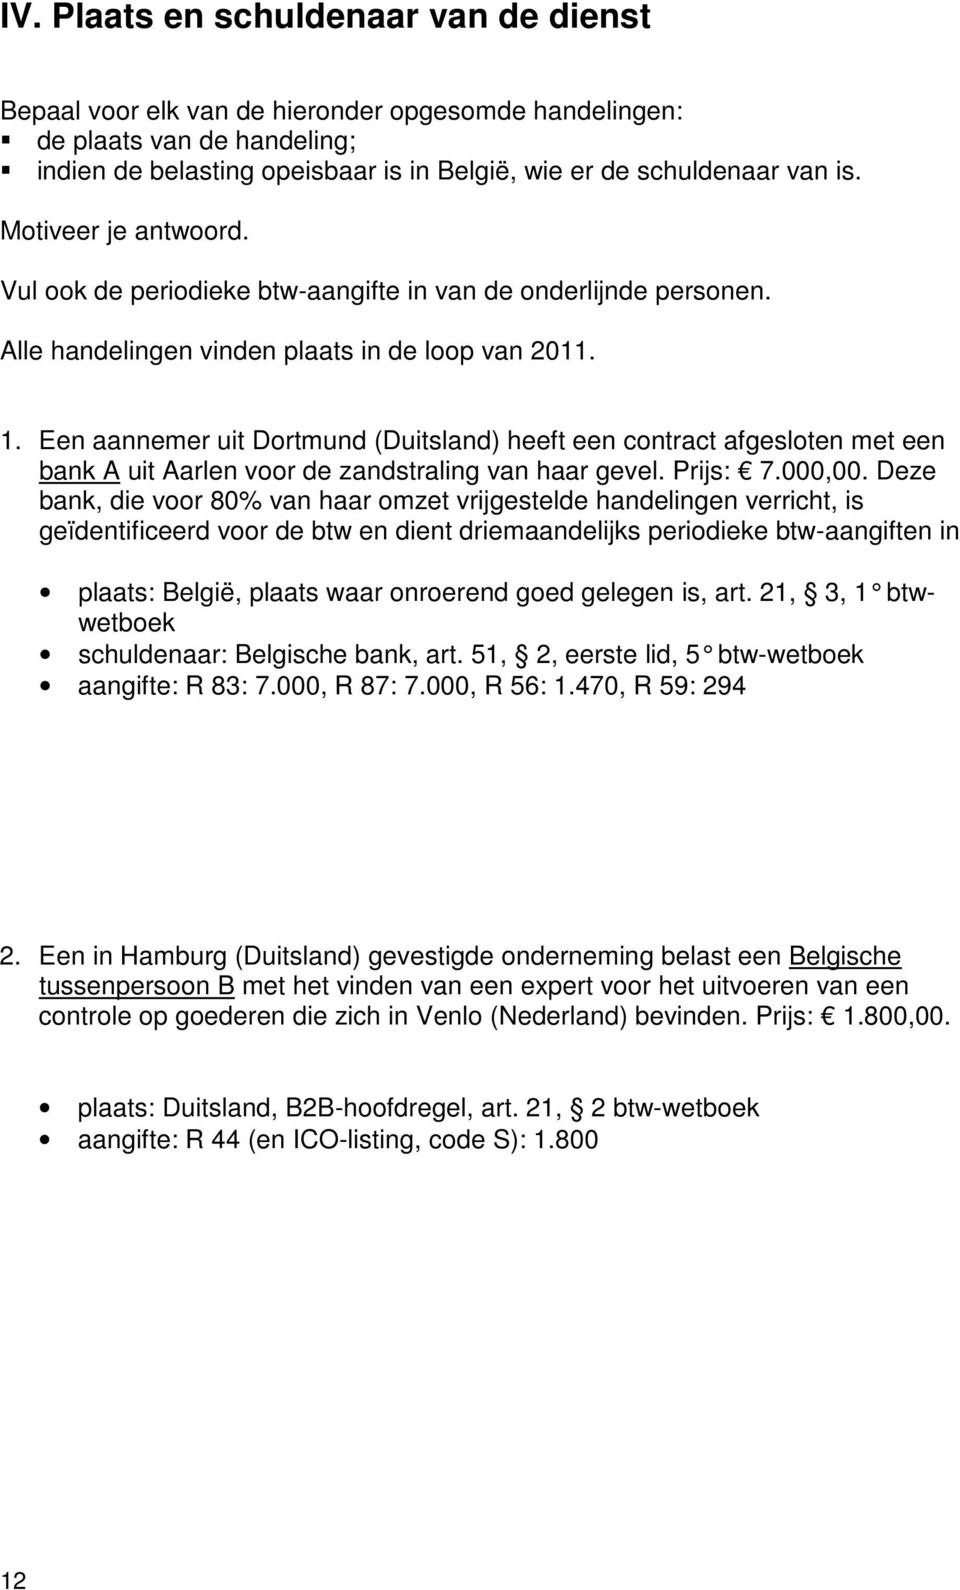 Een aannemer uit Dortmund (Duitsland) heeft een contract afgesloten met een bank A uit Aarlen voor de zandstraling van haar gevel. Prijs: 7.000,00.